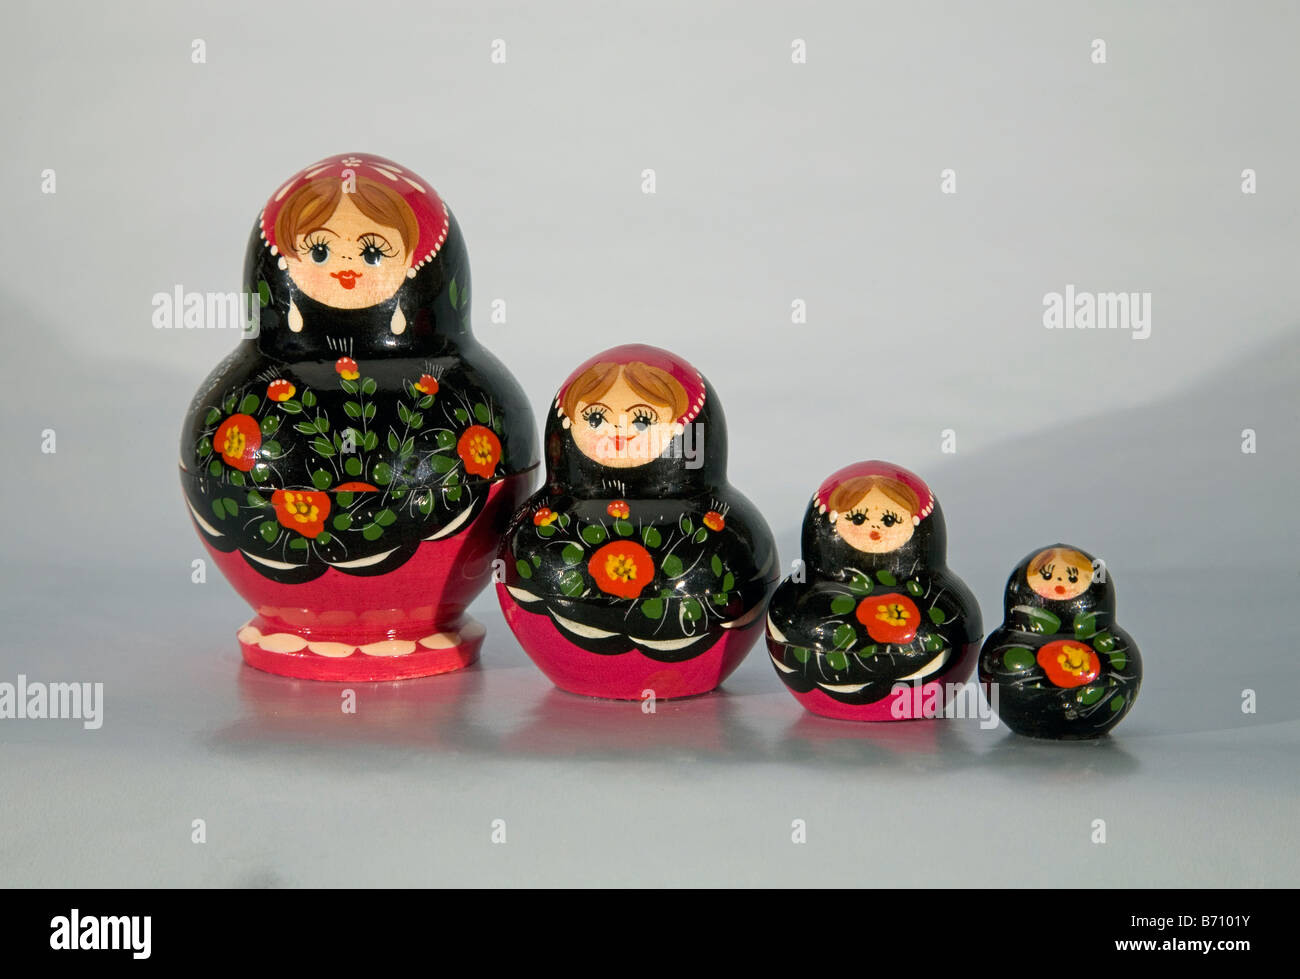 Detalle de anidamiento ruso también conocido como matryoshka MUÑECAS MUÑECAS MUÑECAS Rusas Babushka o muñecas anidadas también llamado dol de apilamiento Foto de stock